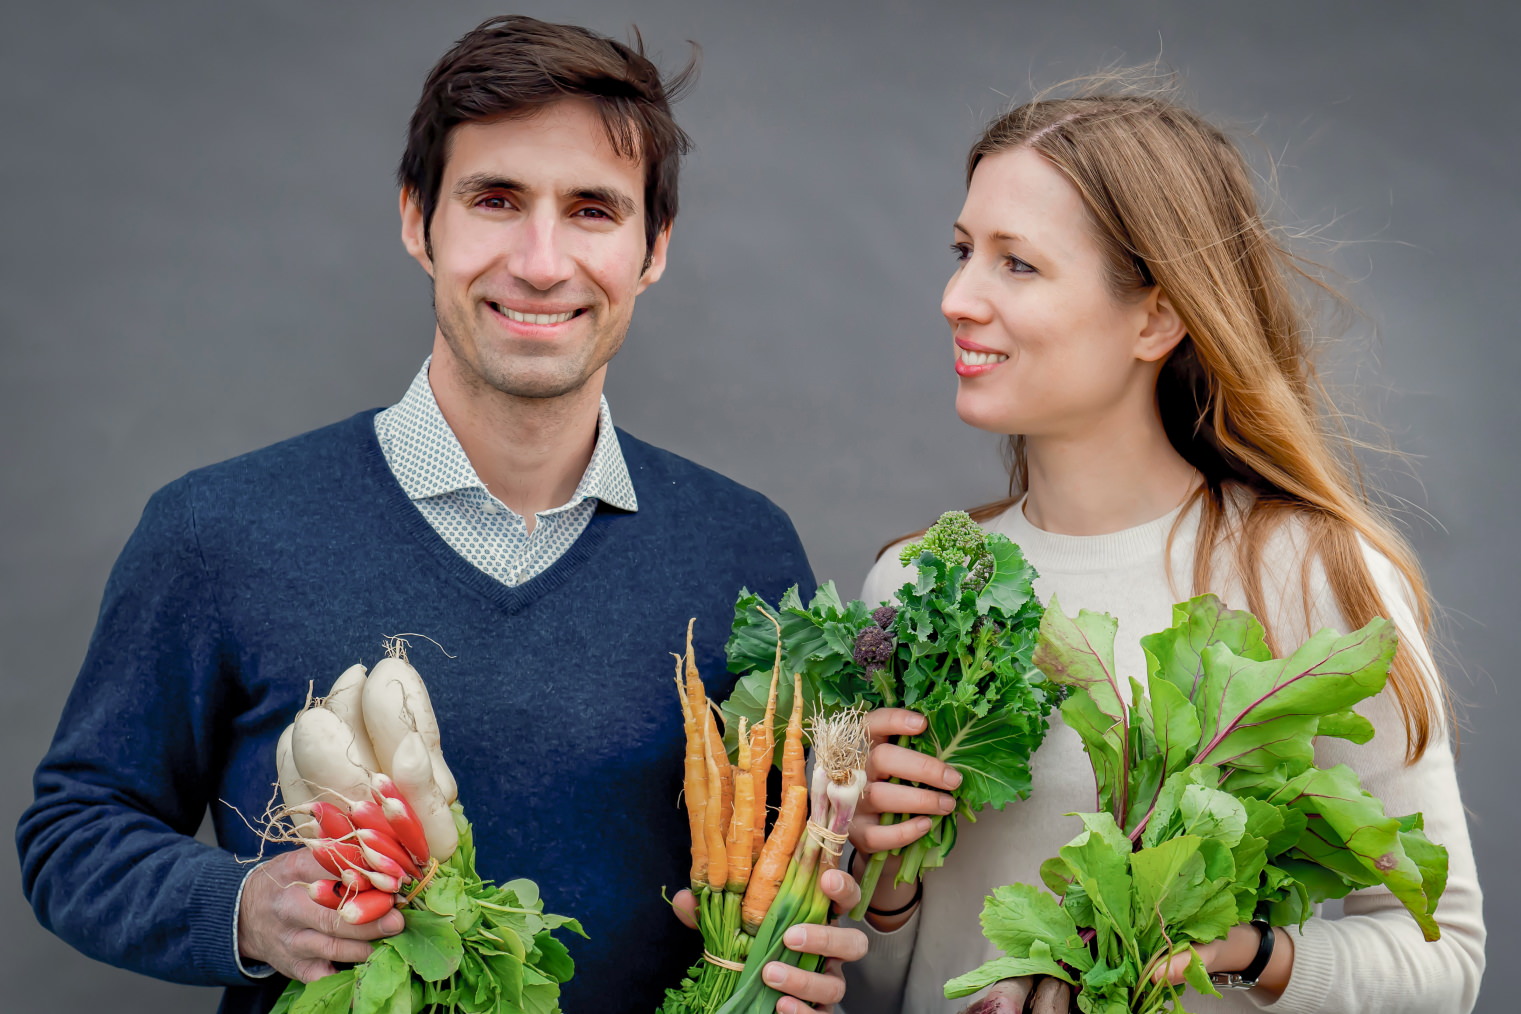 Filpe Leal og Mathilde Jakobsen med grøntsager i hænderne